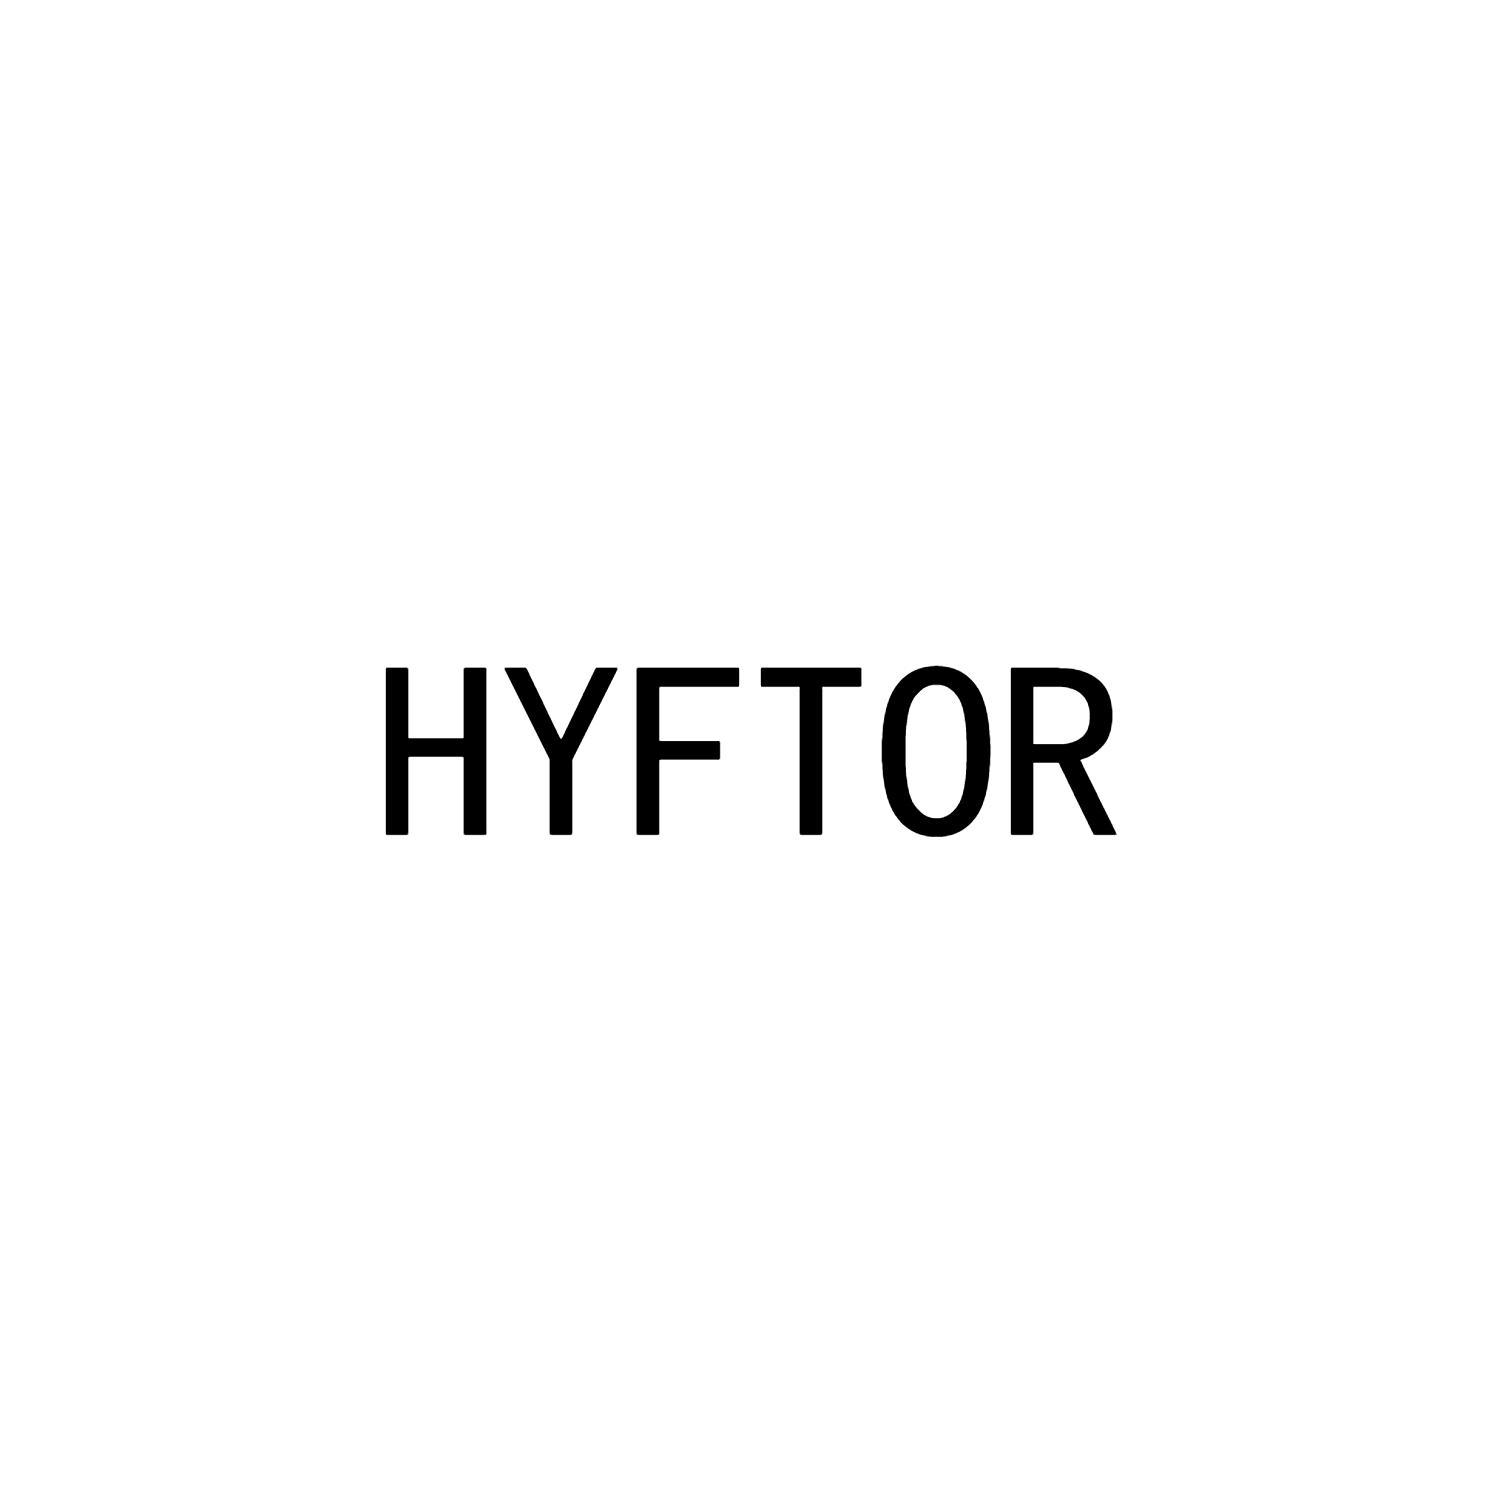 HYFTOR